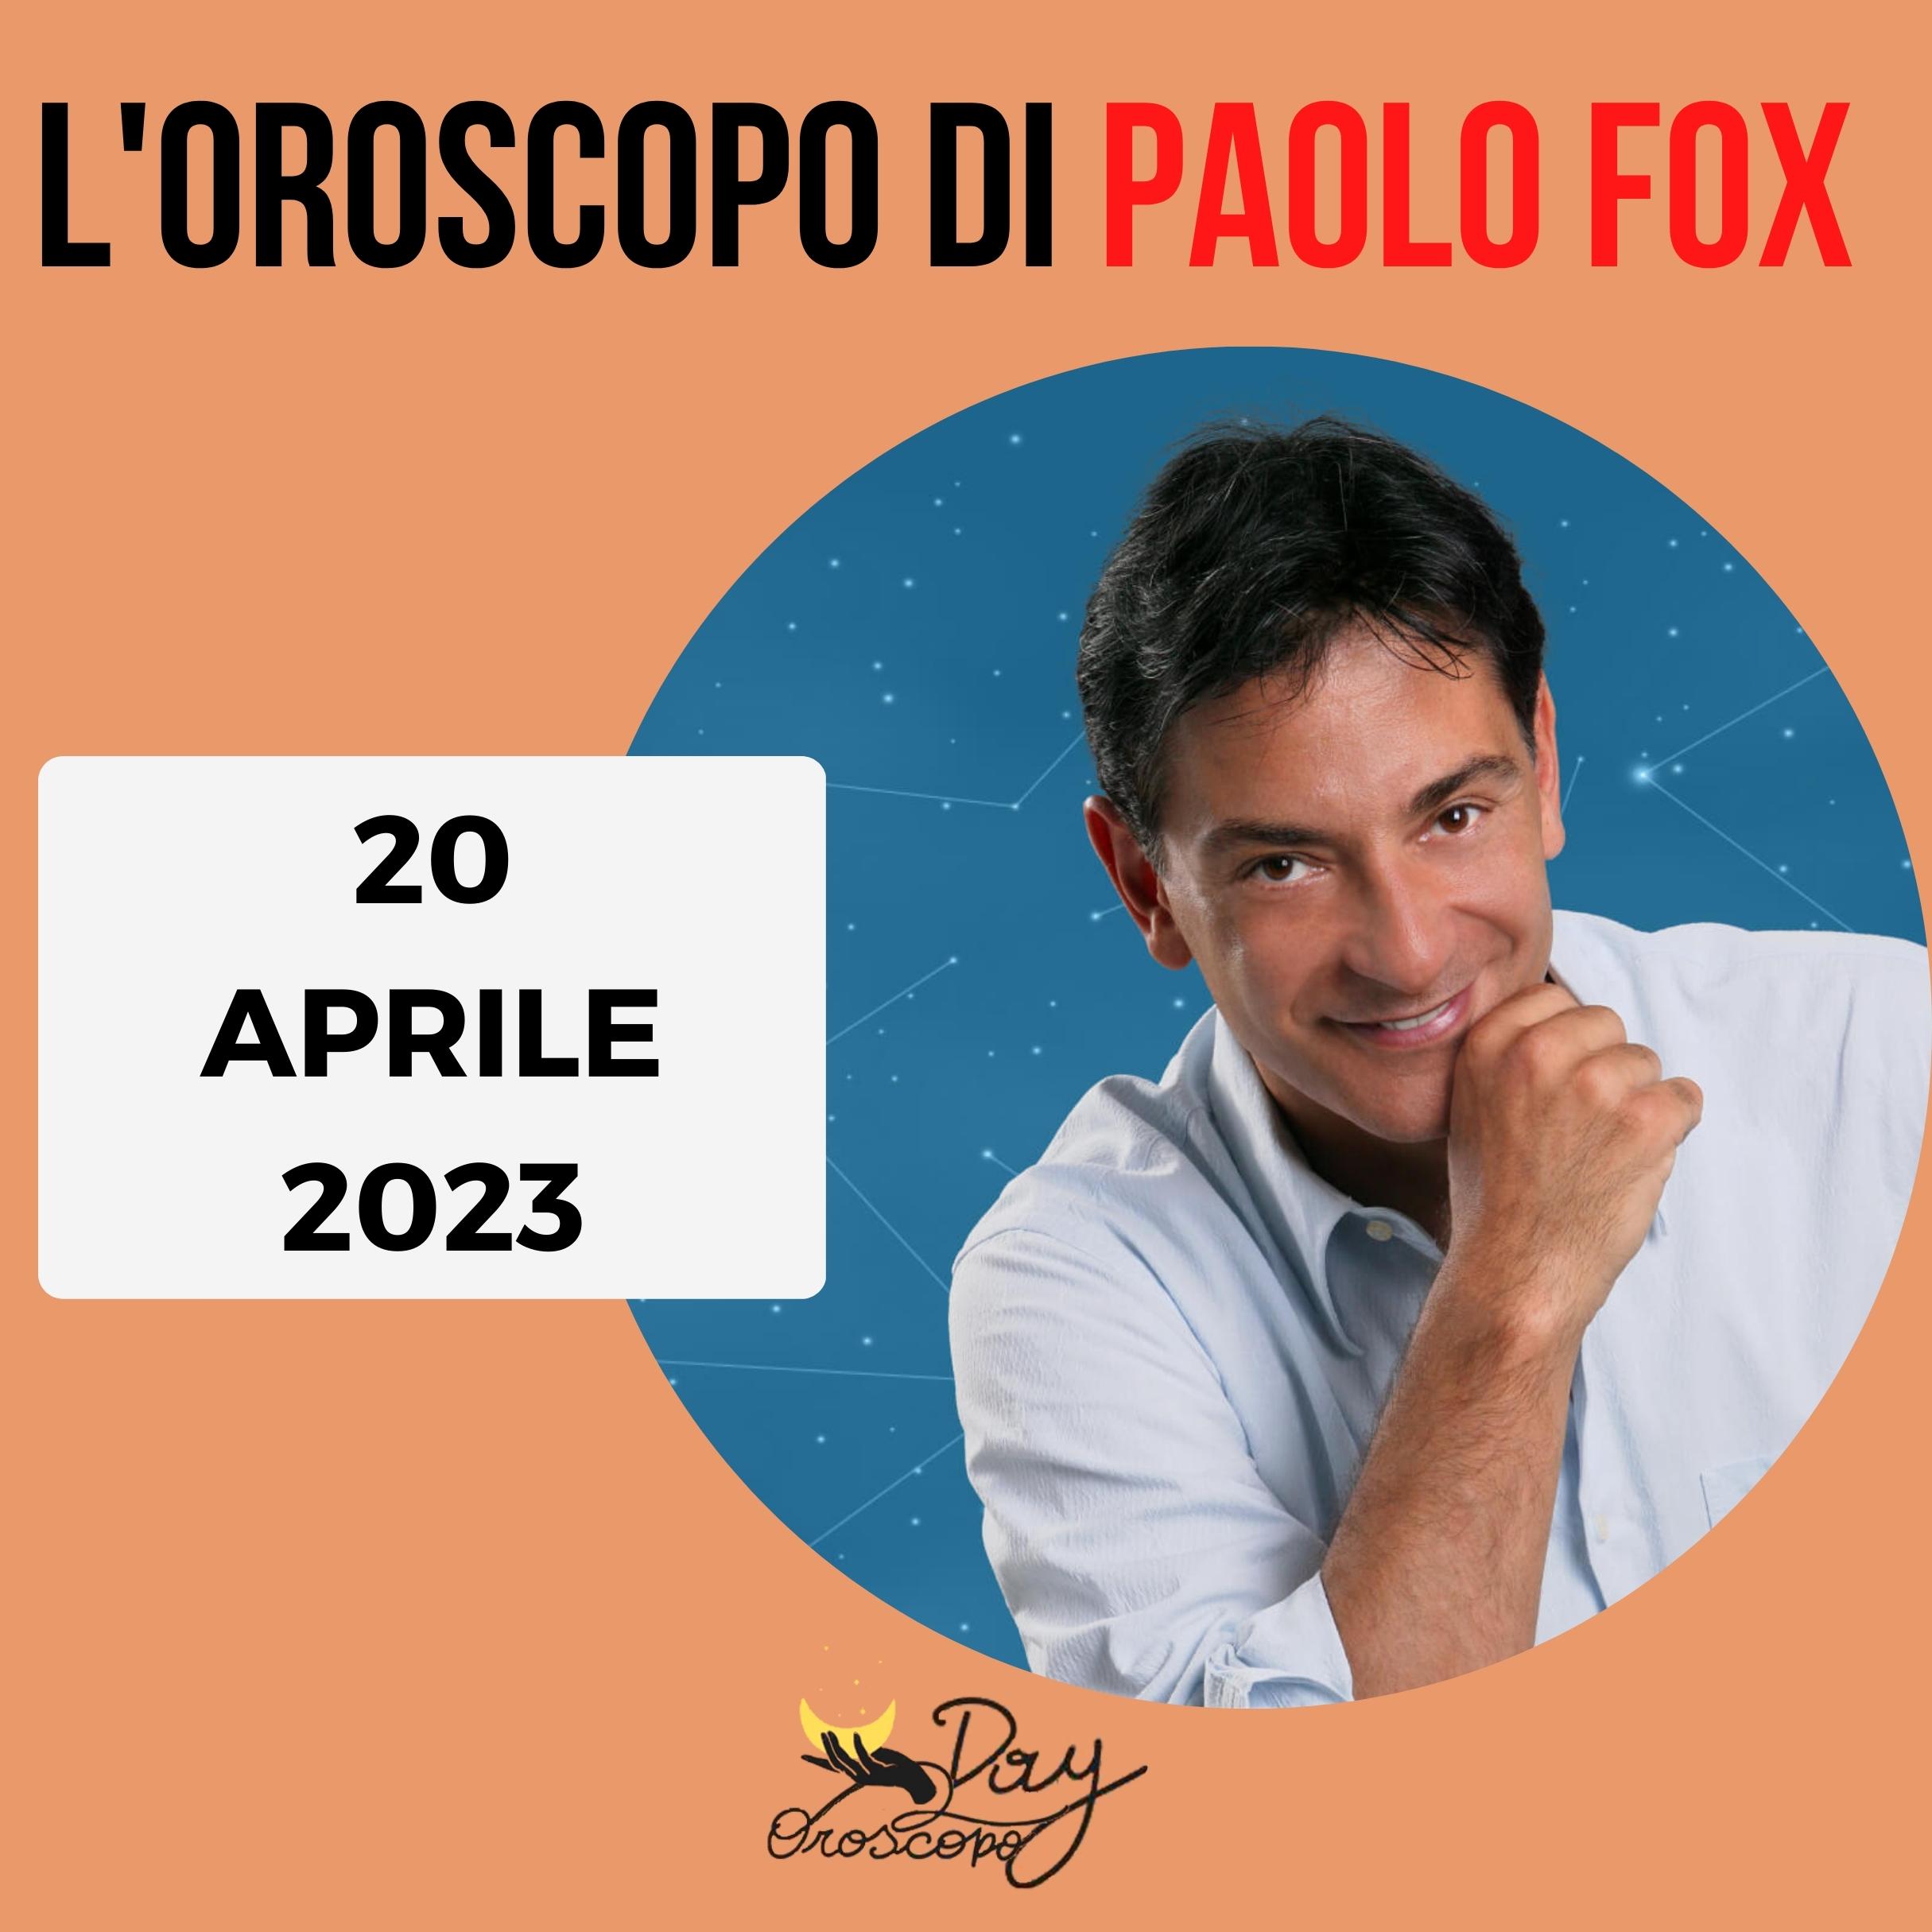 Oroscopo oggi domani Paolo Fox 20 aprile 2023